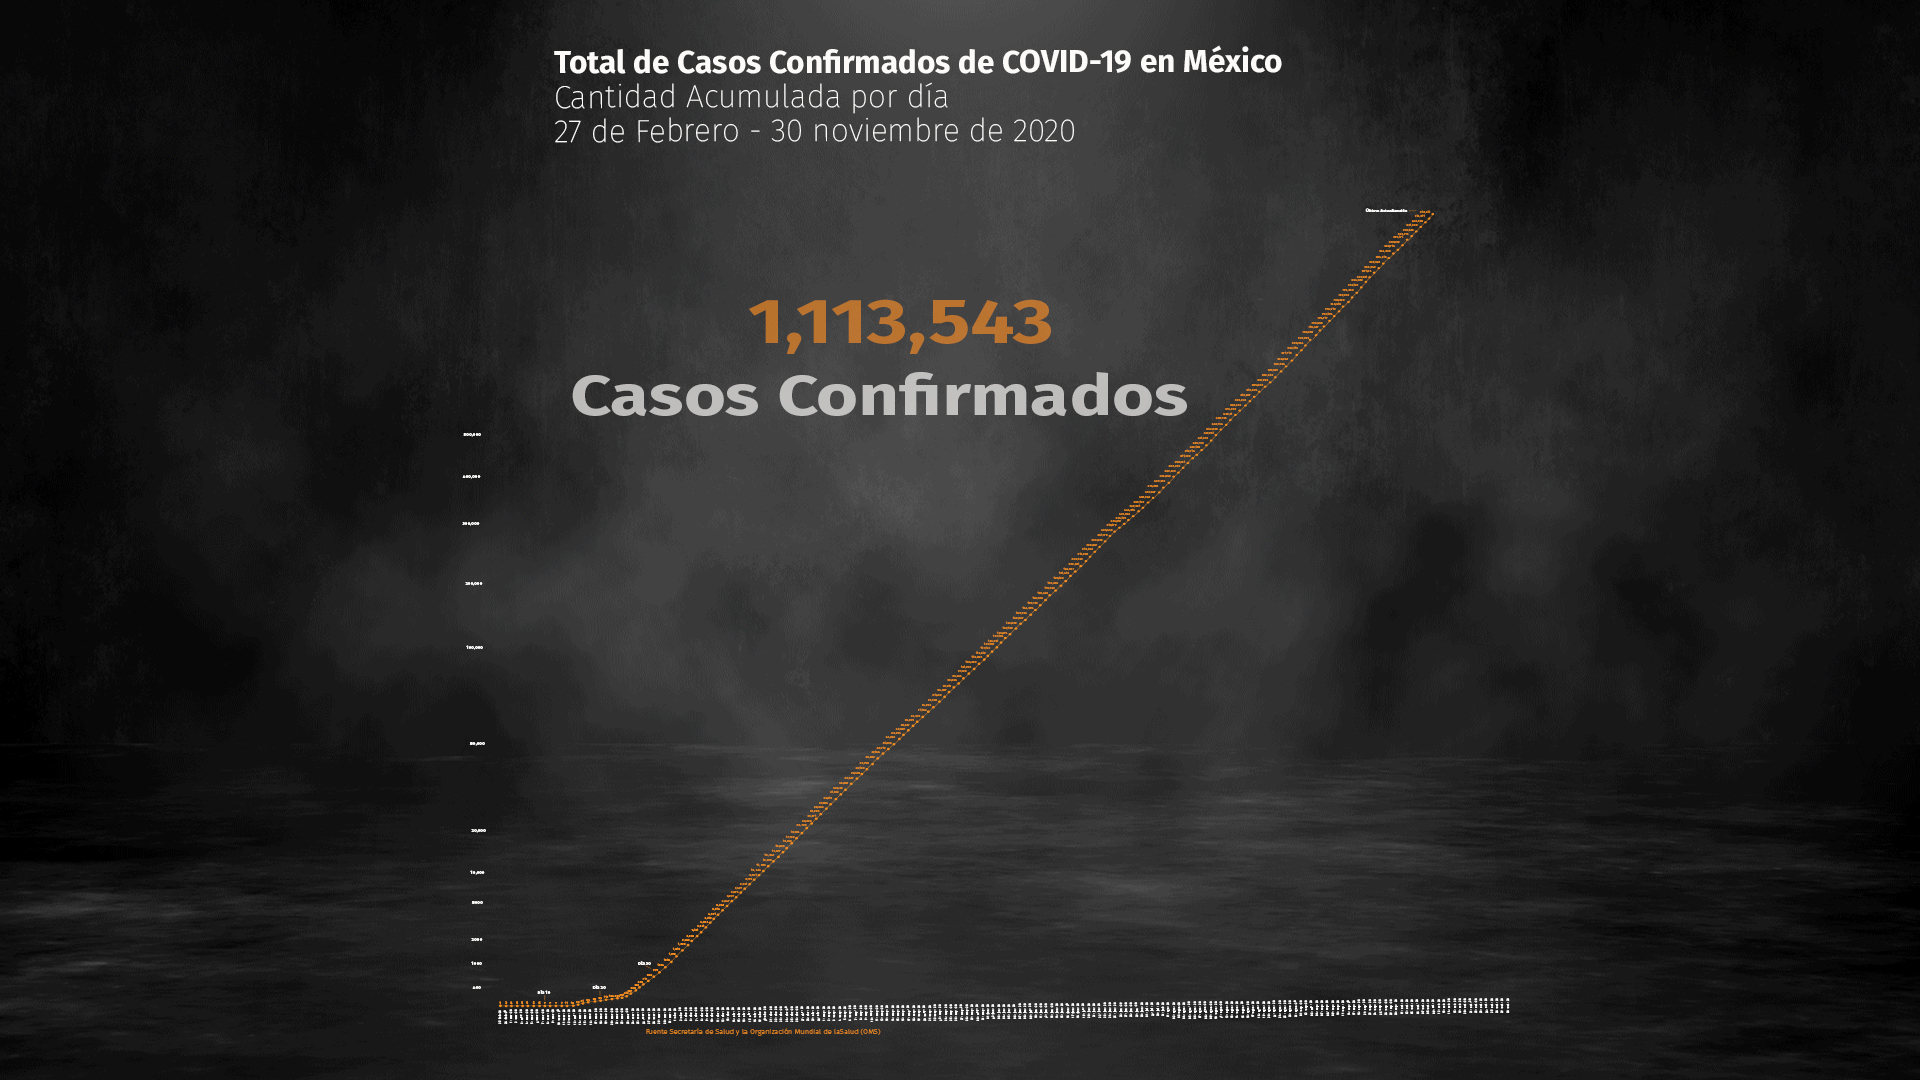 Hasta el 30 de noviembre de 2020 se han acumulado 1,113,543 casos confirmados de COVID-19 en México (Ilustración: Steve Allen)